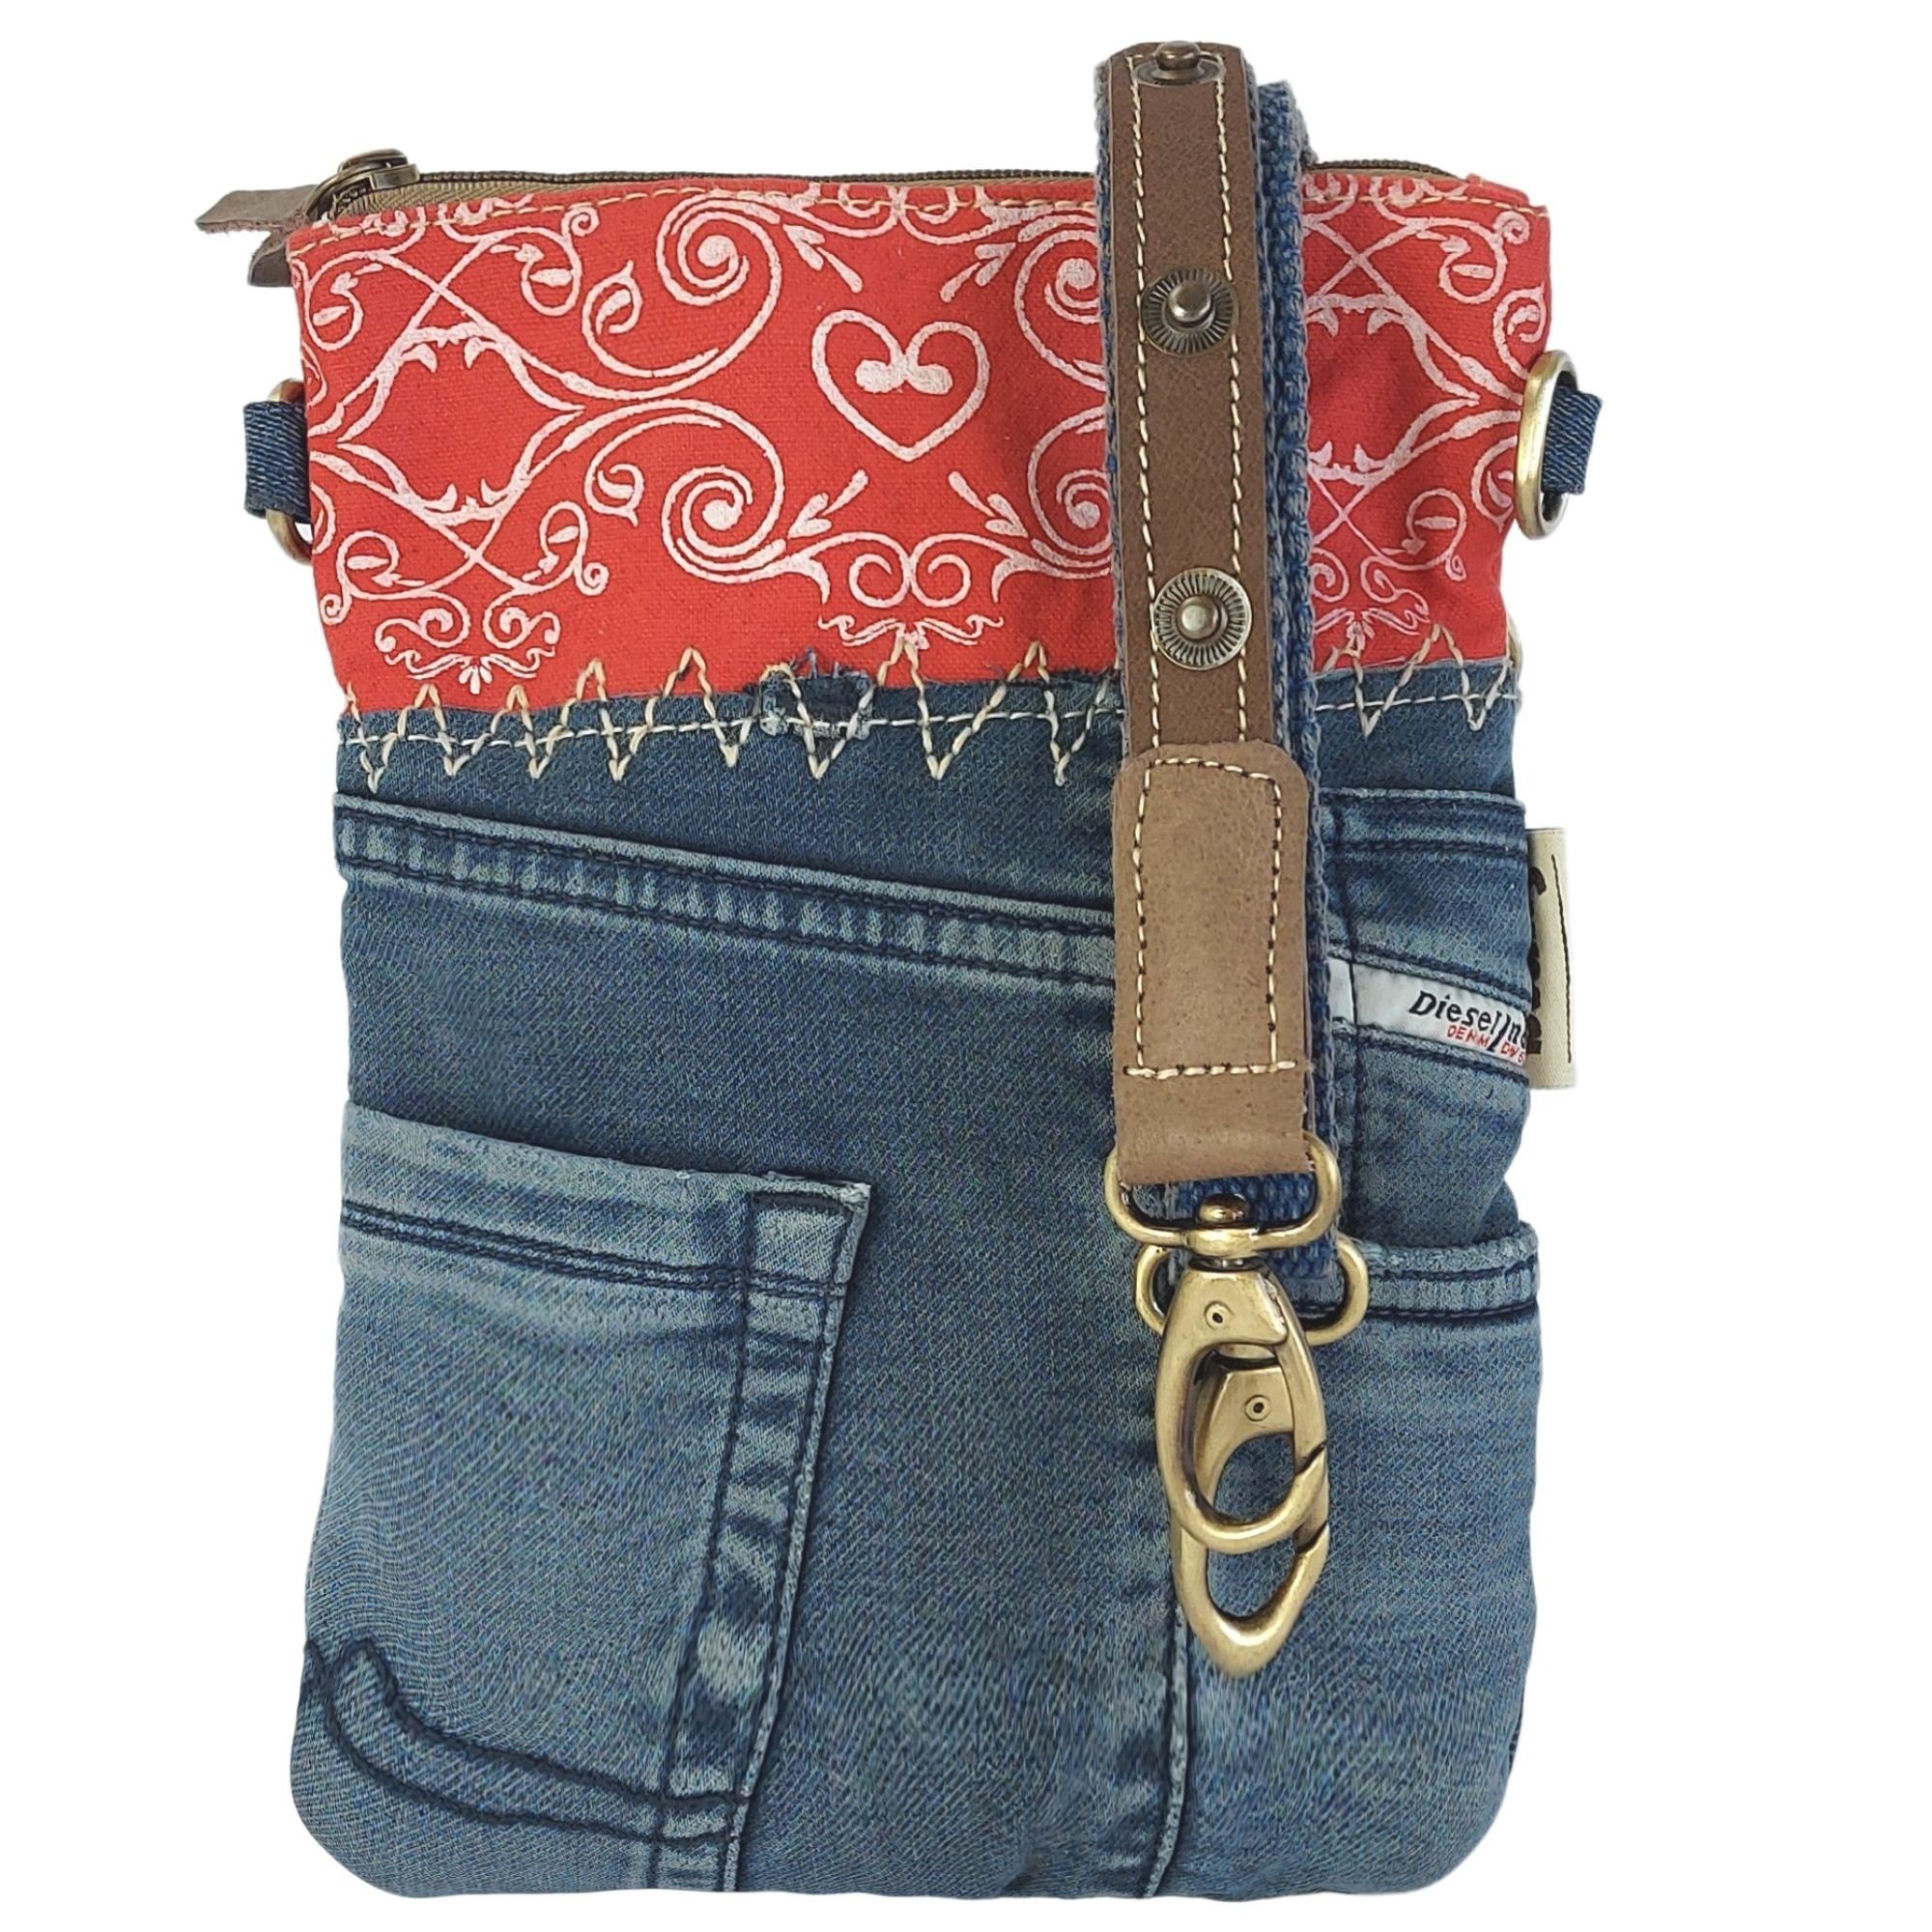 Sunsa Umhängetasche Damen Umhängetasche aus Canvas und recycelte Jeans, Kleine  rot/blau Crossbody Bag. 52669, enthält recyceltes Material